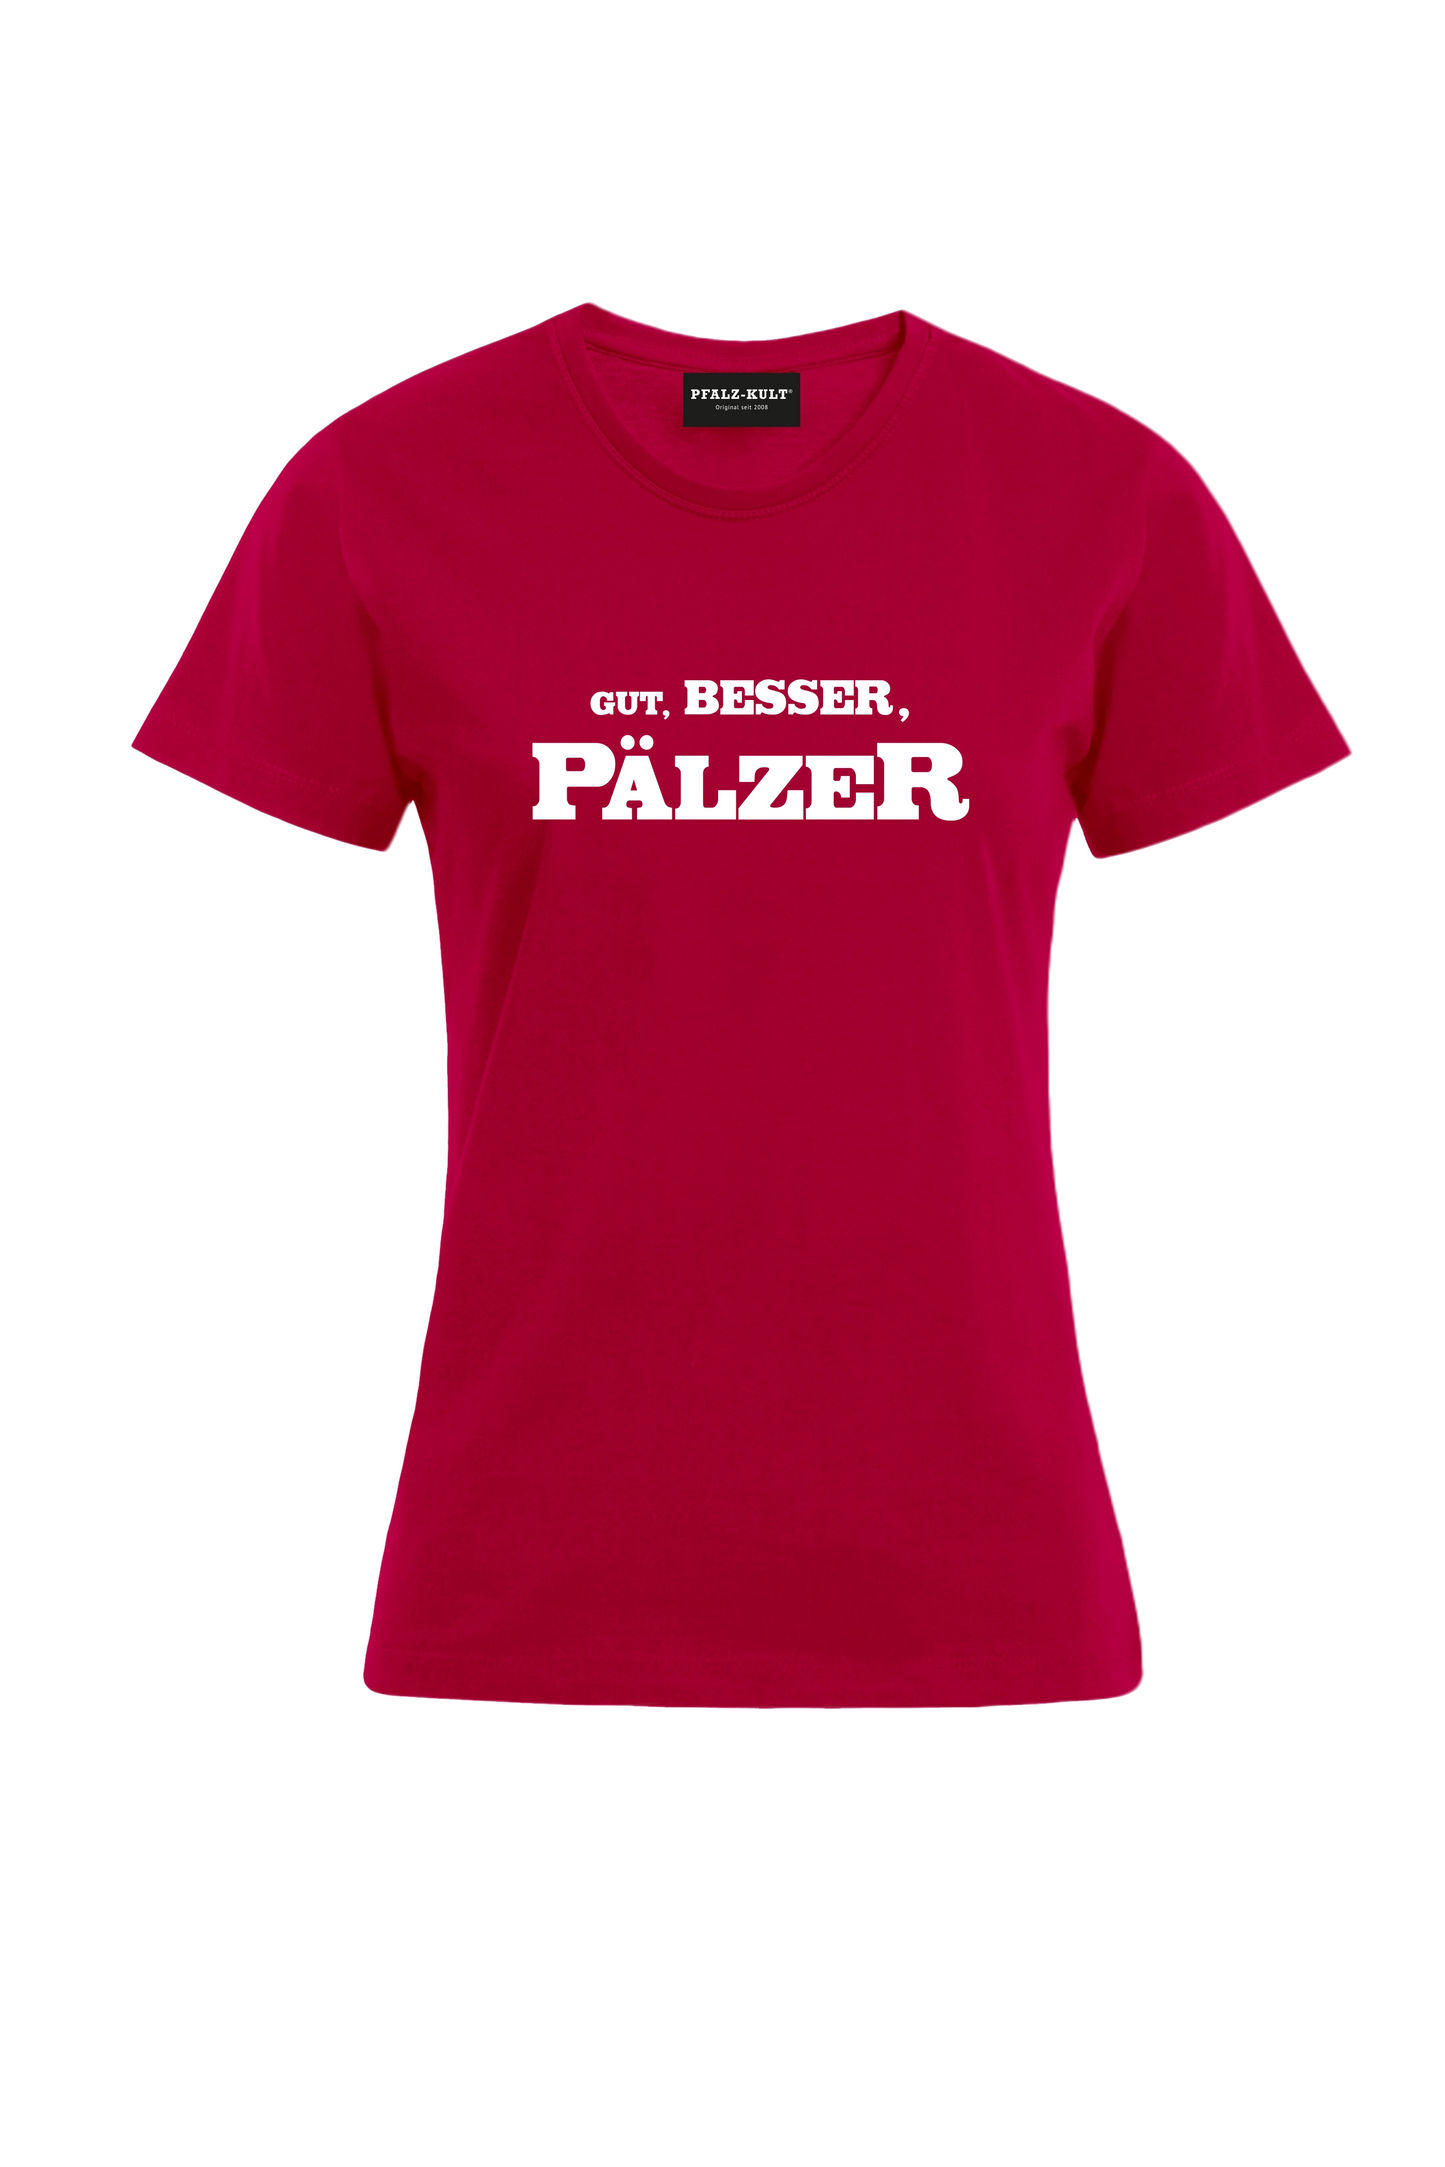 Gut, besser, Pälzer Damen T-Shirt in rot. Geschenkidee auf pfälzisch von Pfalz-Kult aus DÜW